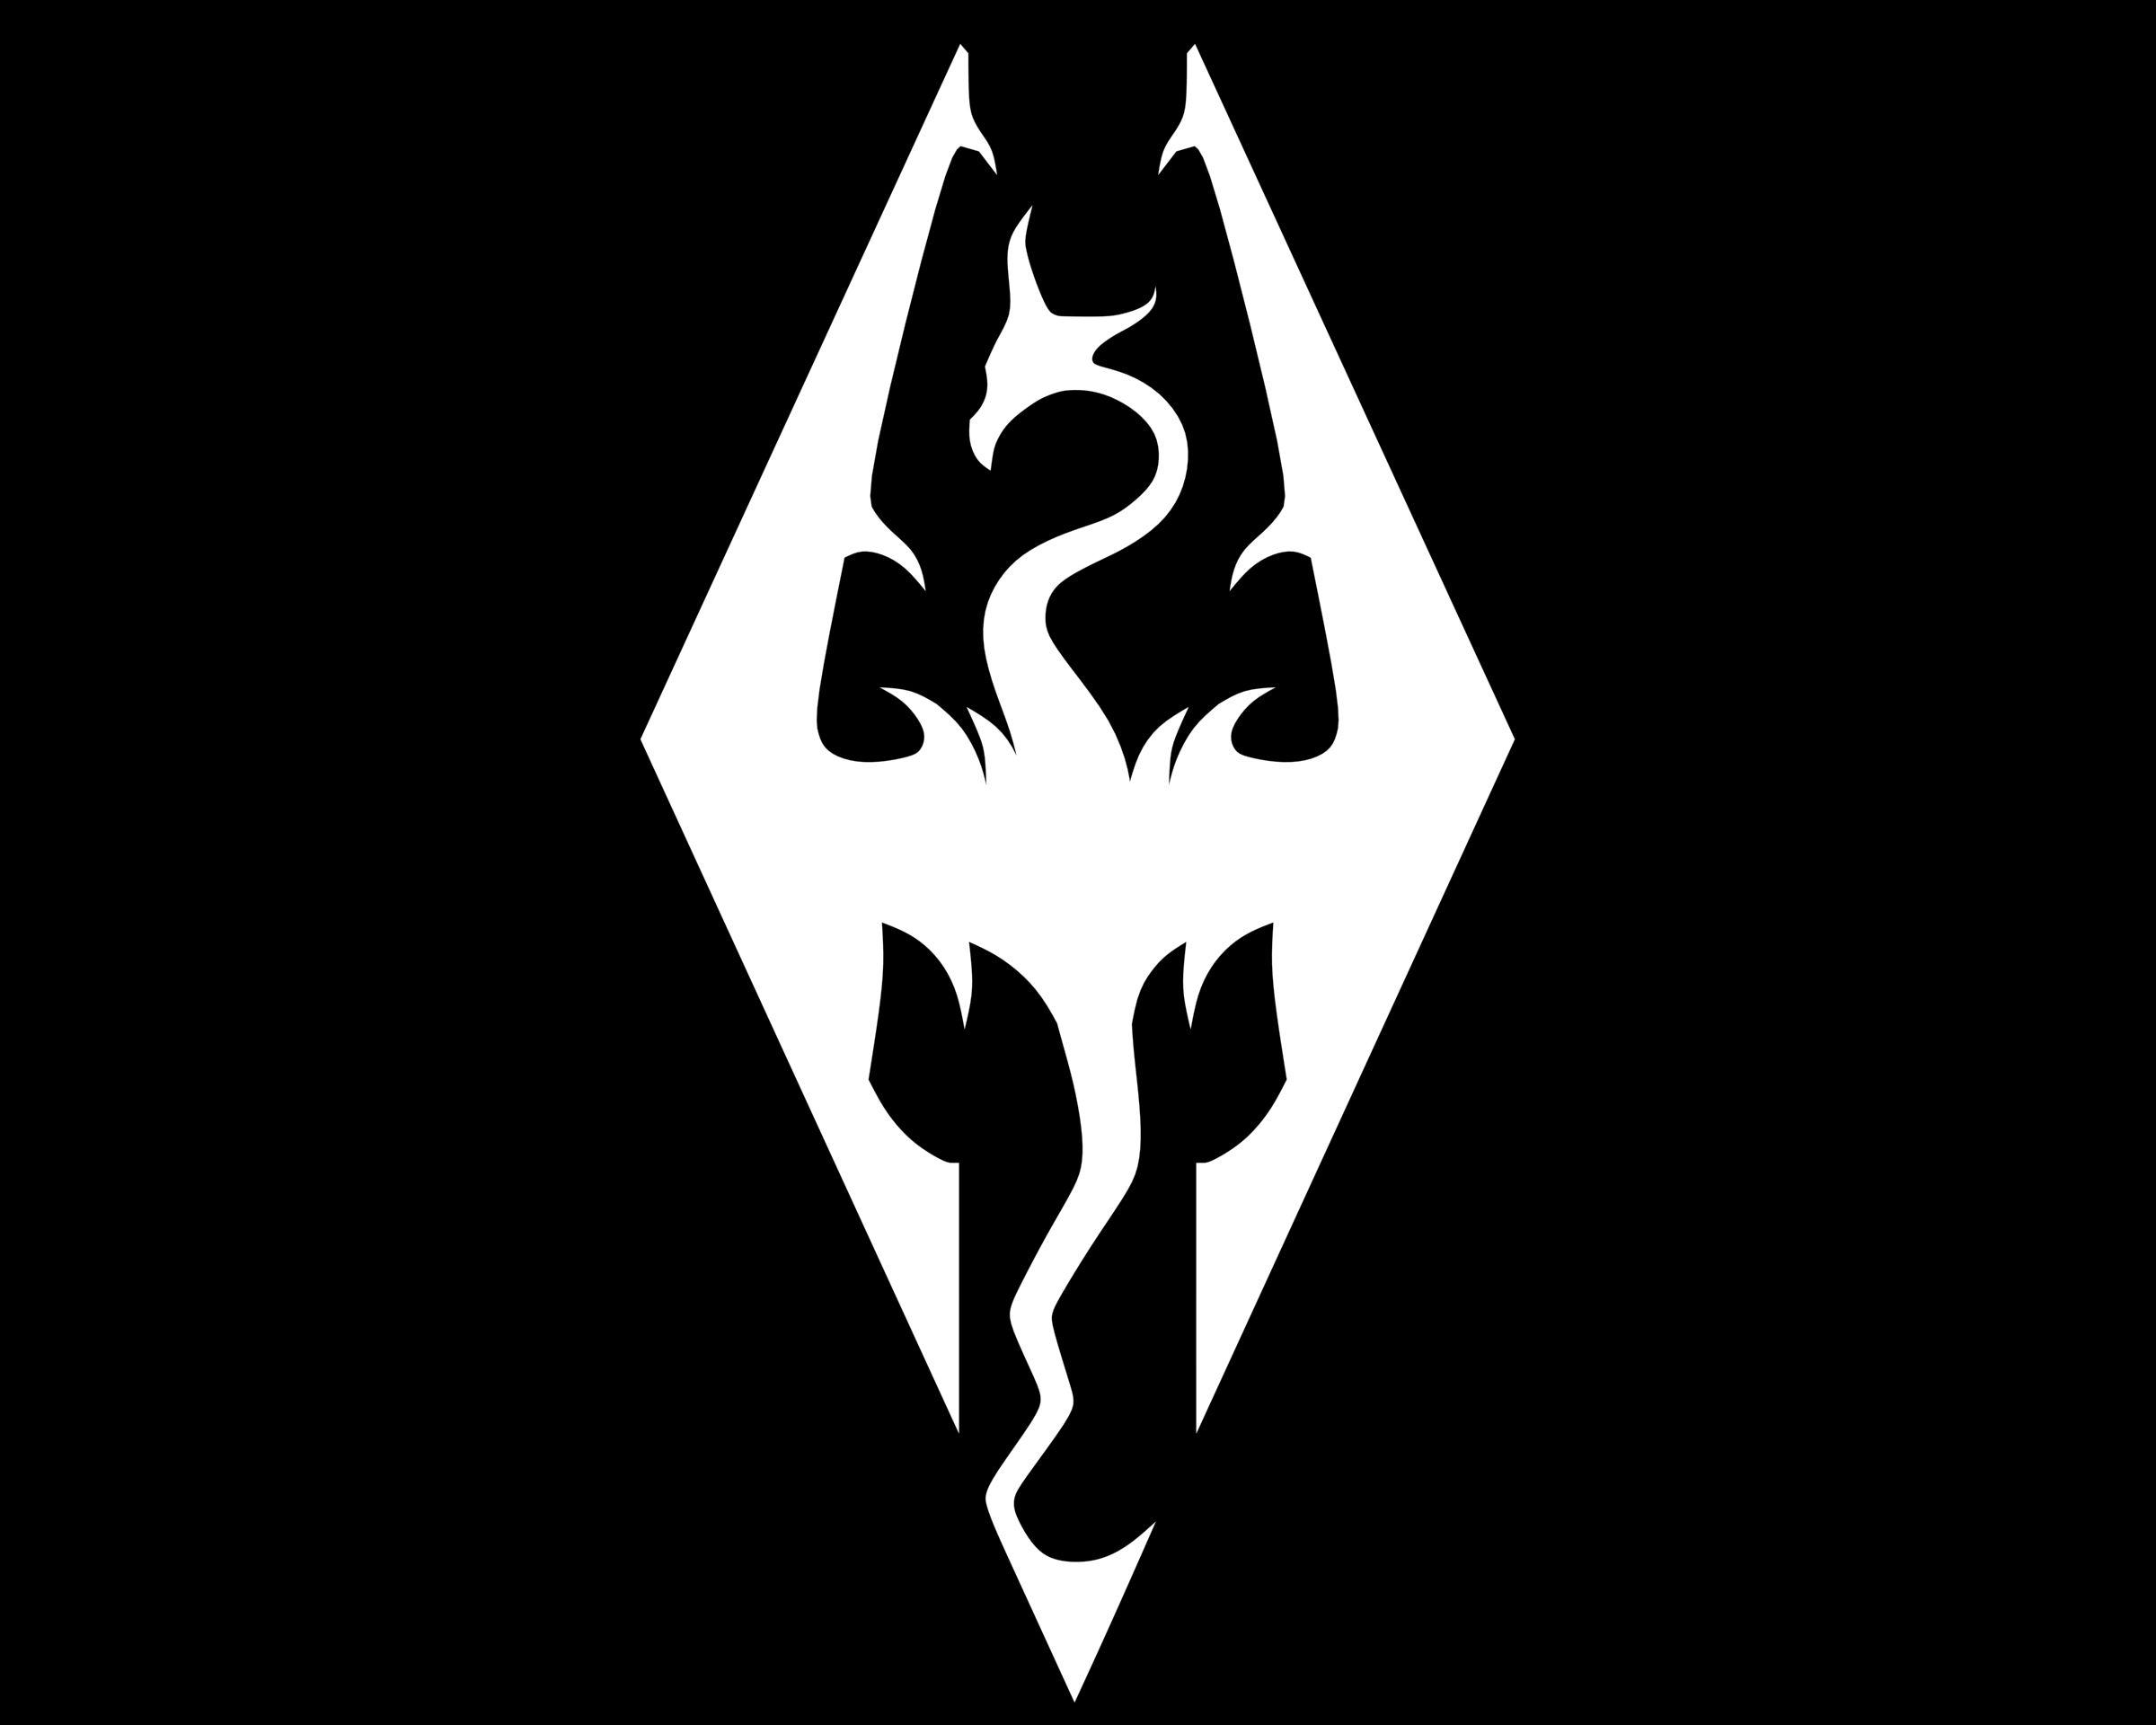 Skyrim Logo - Skyrim Logo, Skyrim Symbol, Meaning, History and Evolution